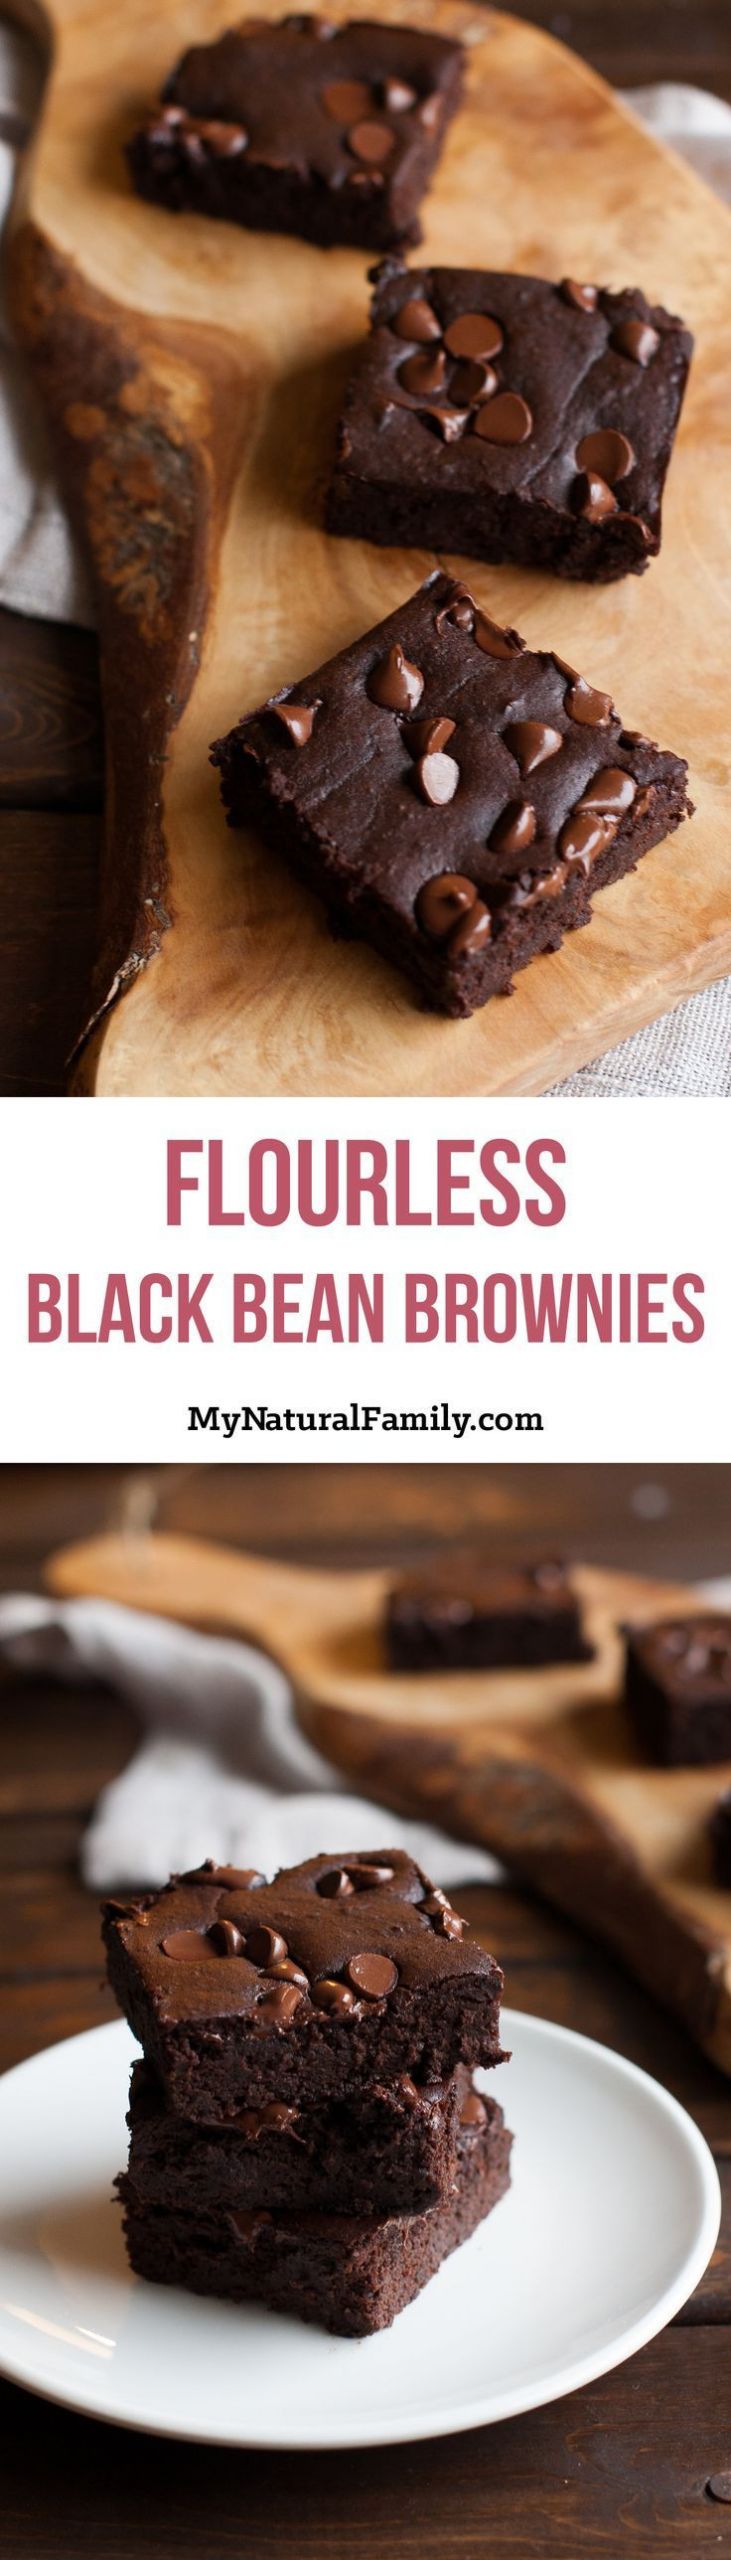 Low Carb Black Bean Brownies
 Gluten Free Flourless Black Bean Brownies Recipe